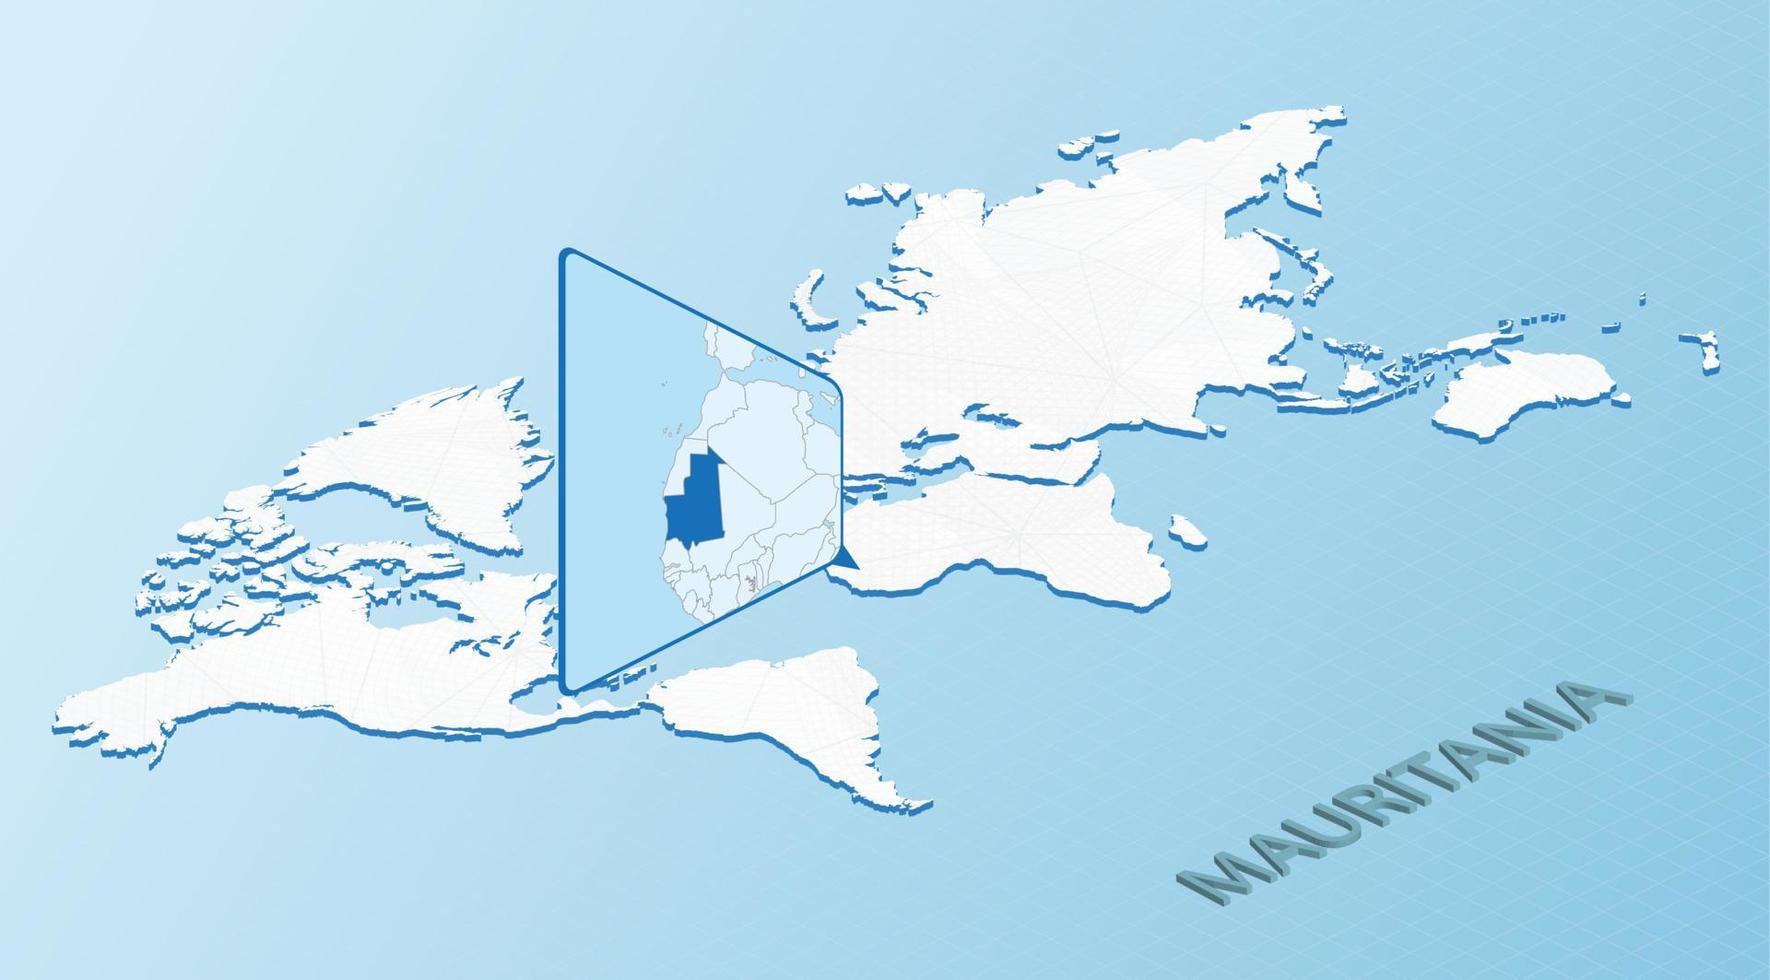 carte du monde en style isométrique avec carte détaillée de la mauritanie. carte mauritanie bleu clair avec carte du monde abstraite. vecteur